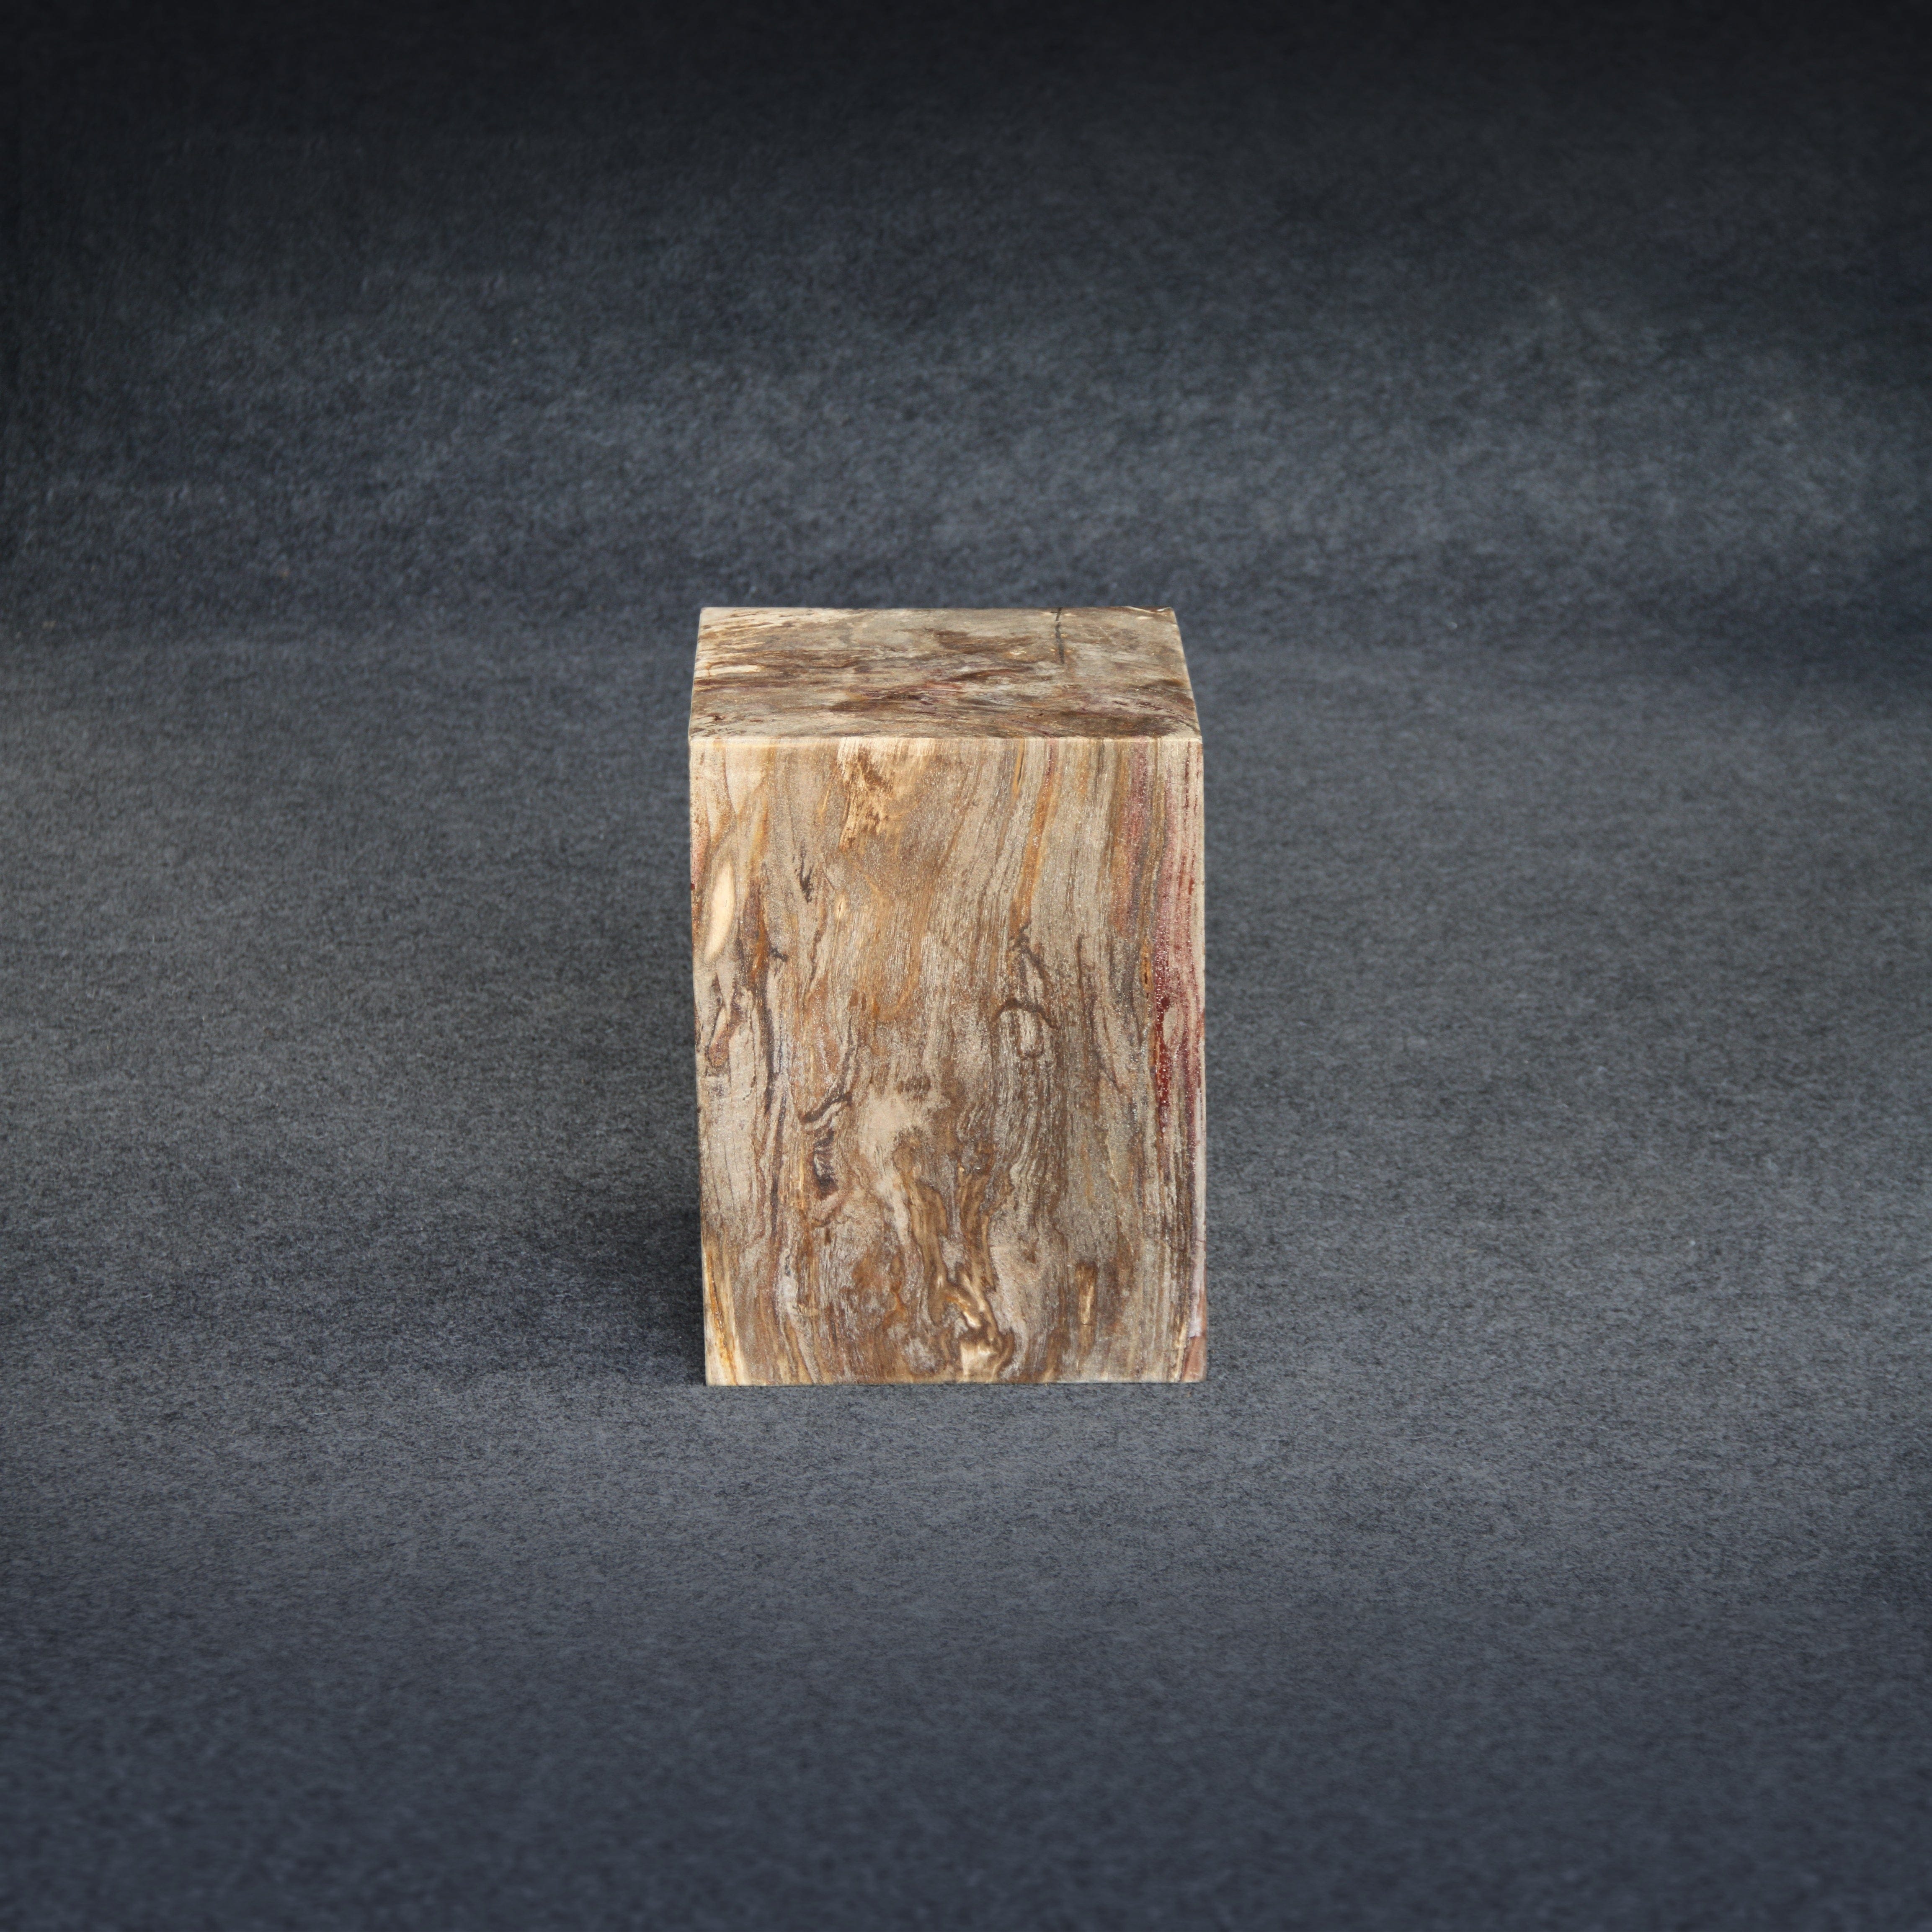 Kalifano Petrified Wood Petrified Wood Square Stump / Stool 16" / 198 lbs PWSS6200.004